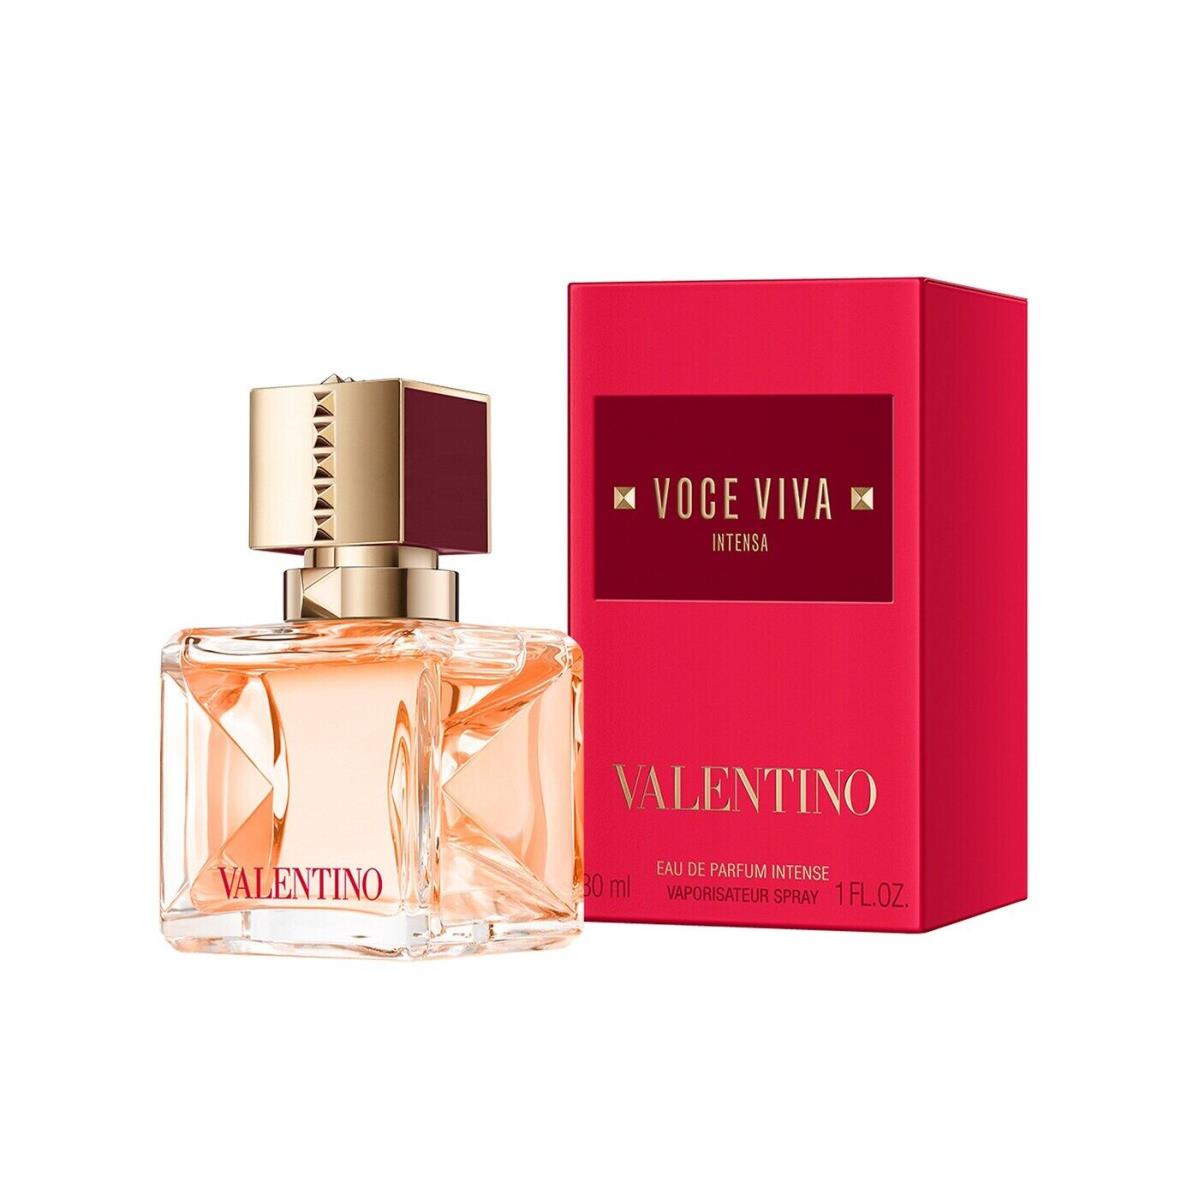 Valentino Voce Viva Intensa Intense Eau de Parfum Spray For Women 30ml/1oz